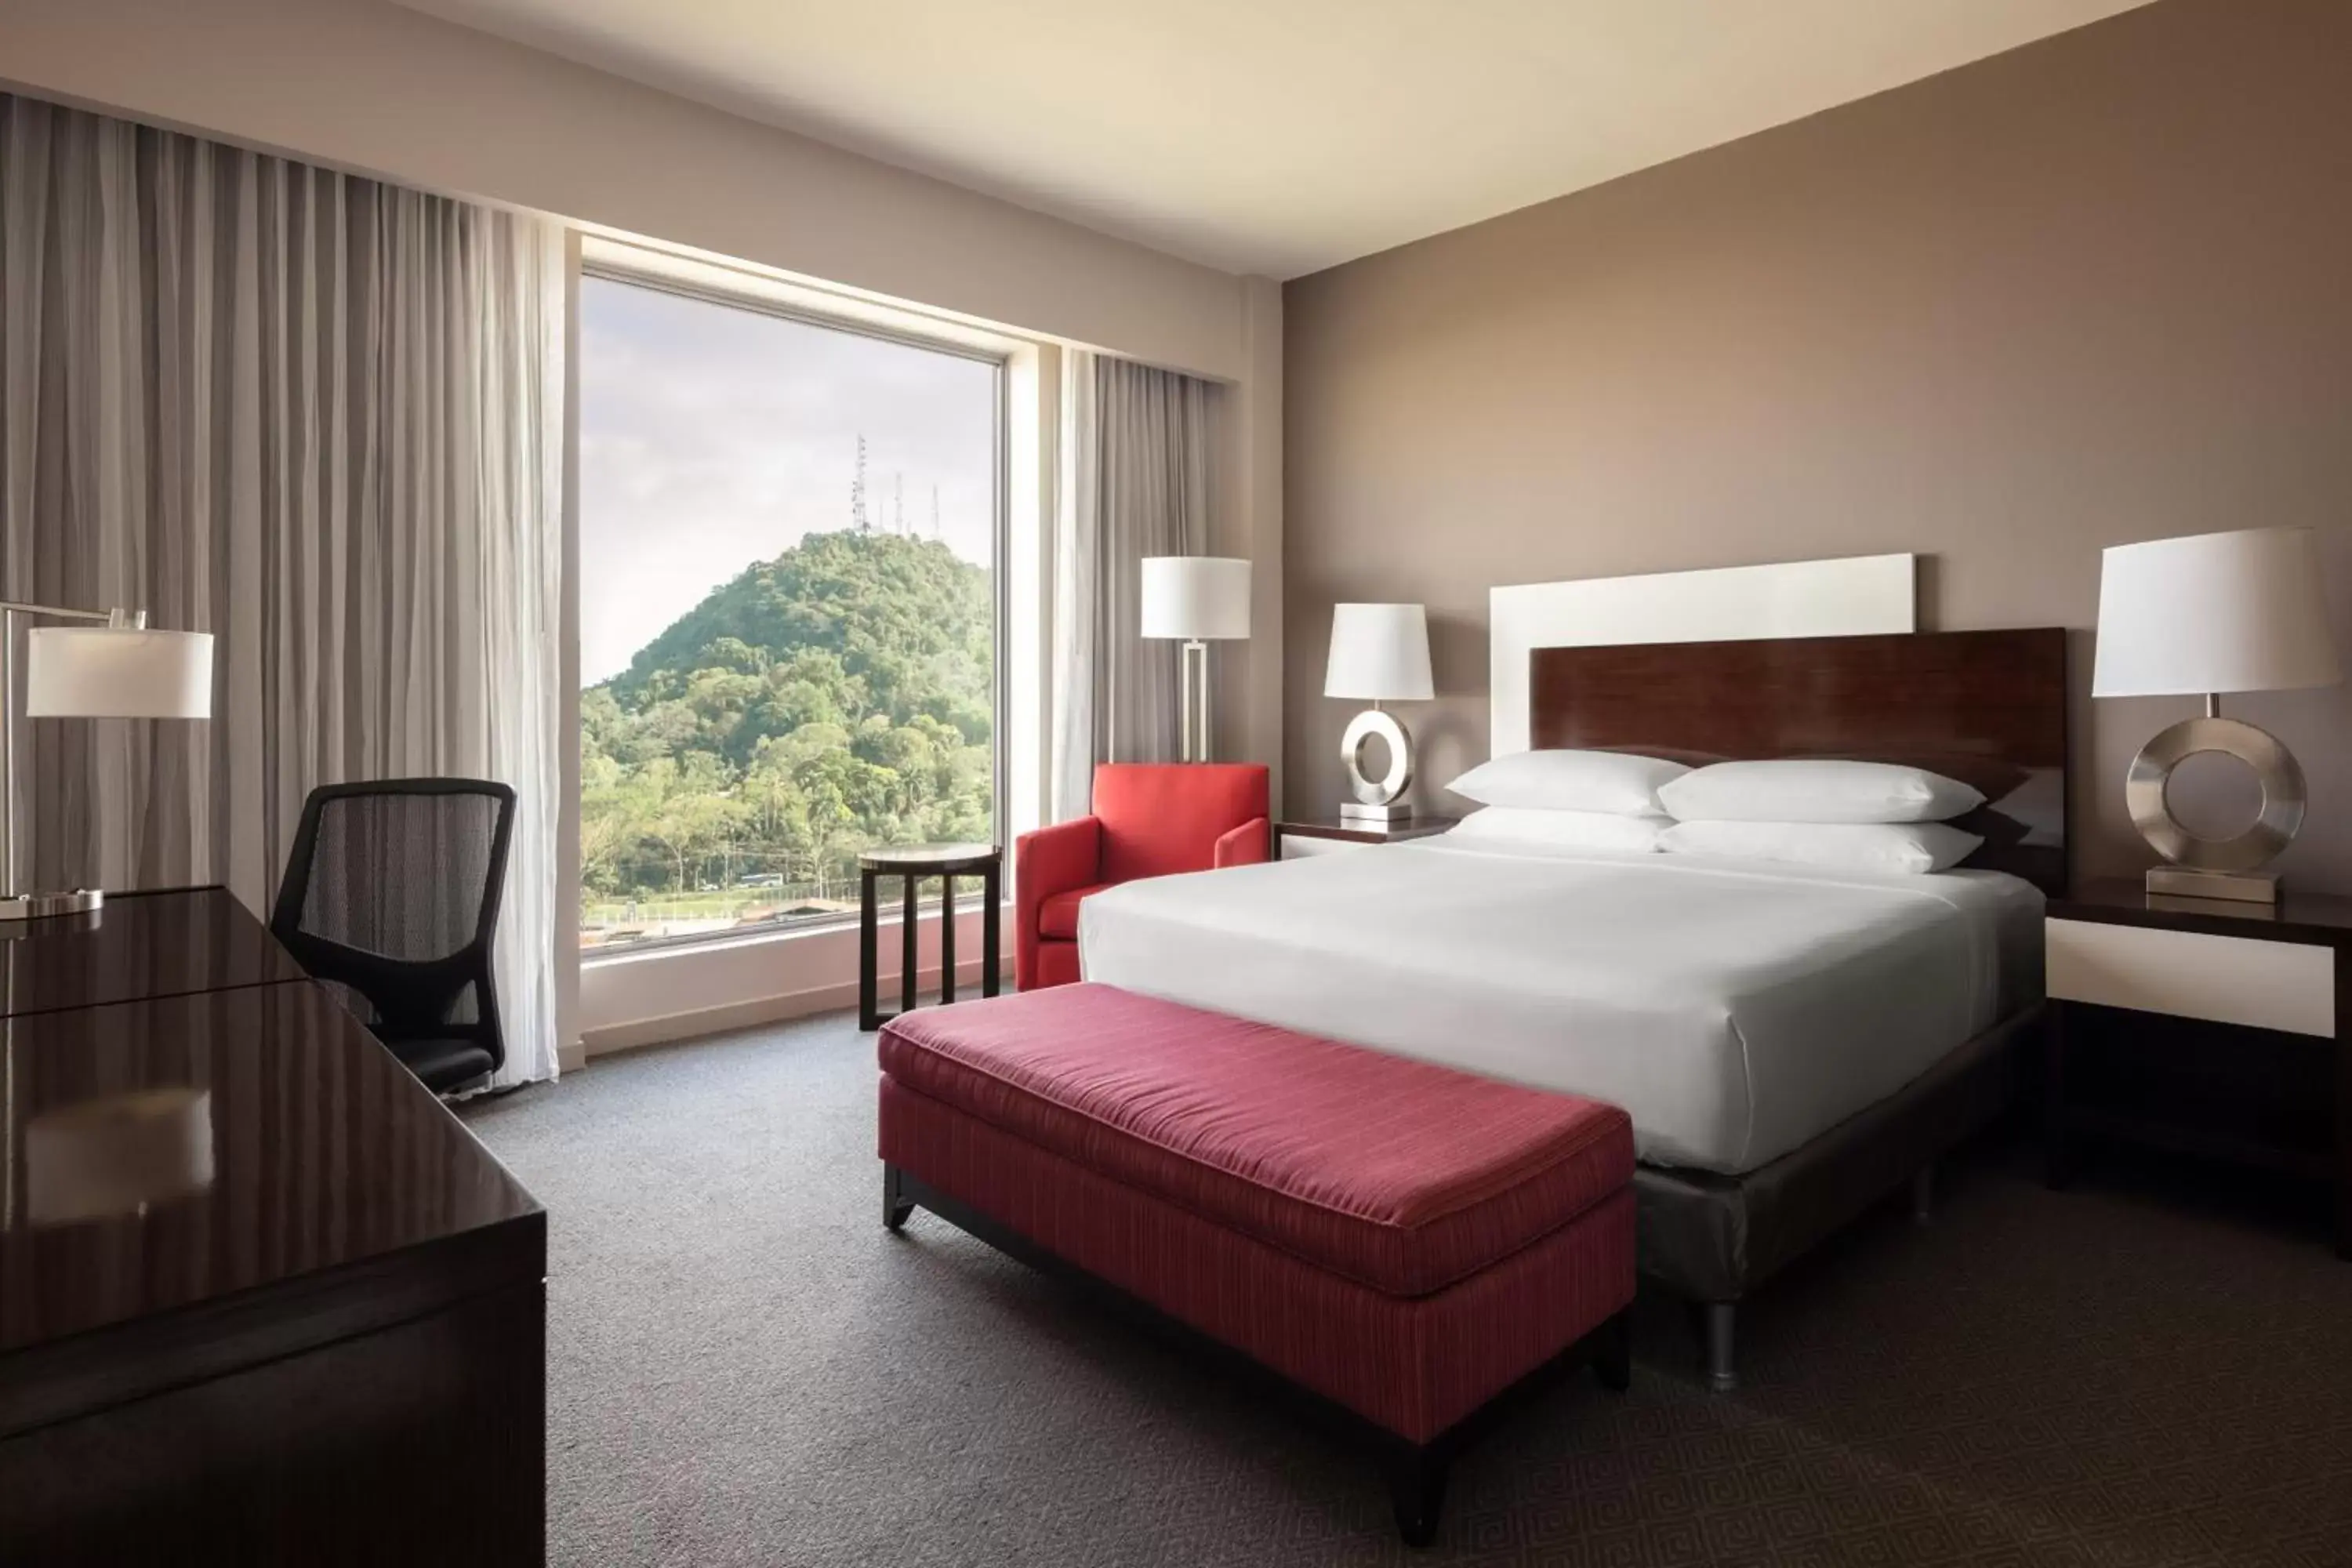 Bedroom in Marriott Panama Hotel